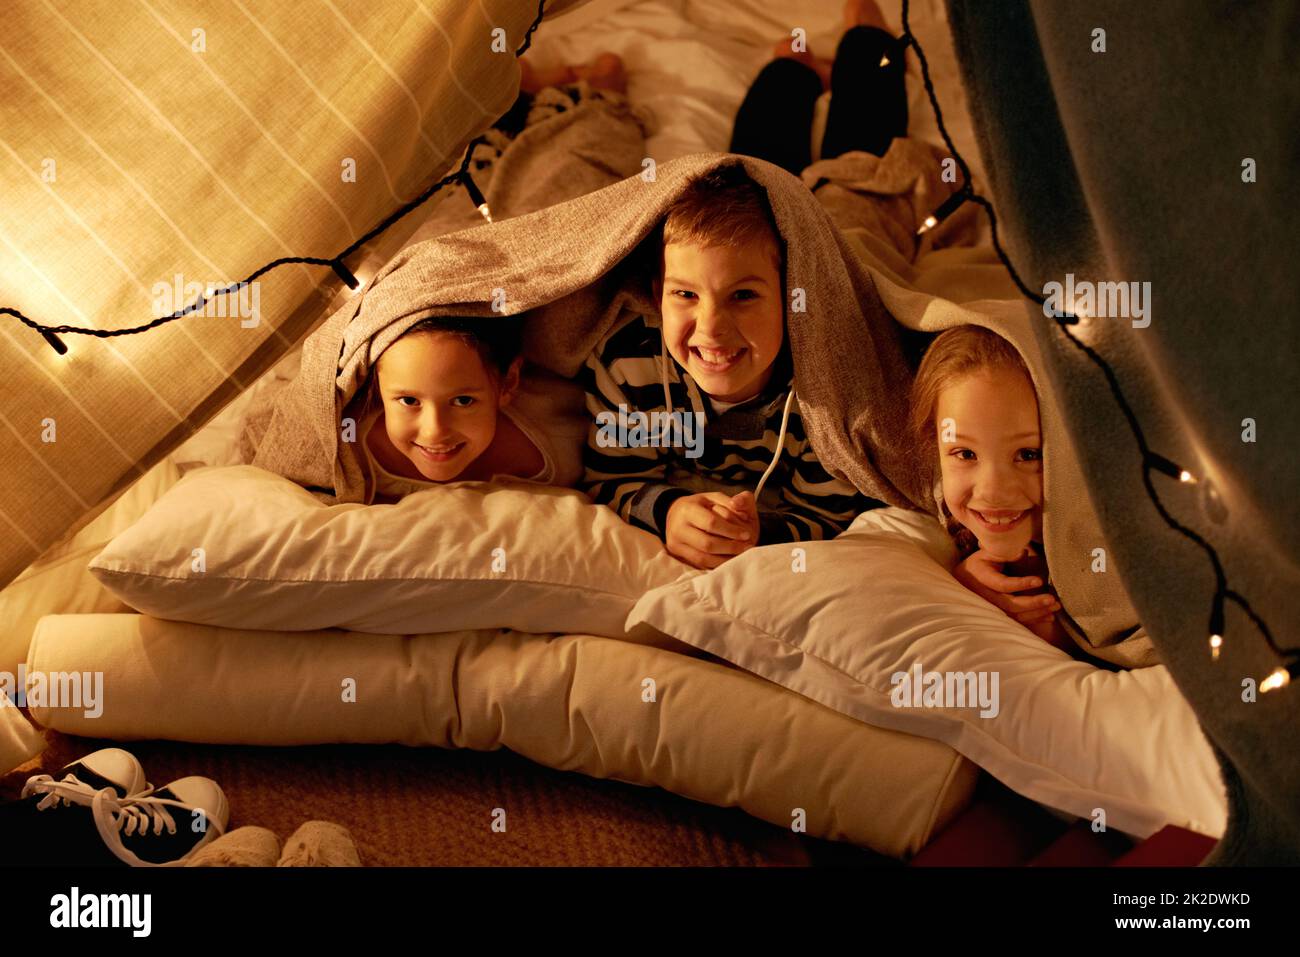 Es wird eine Weile dauern, bis wir schlafen gehen. Aufnahme von drei kleinen Kindern, die zusammen in einem Zelt spielen. Stockfoto